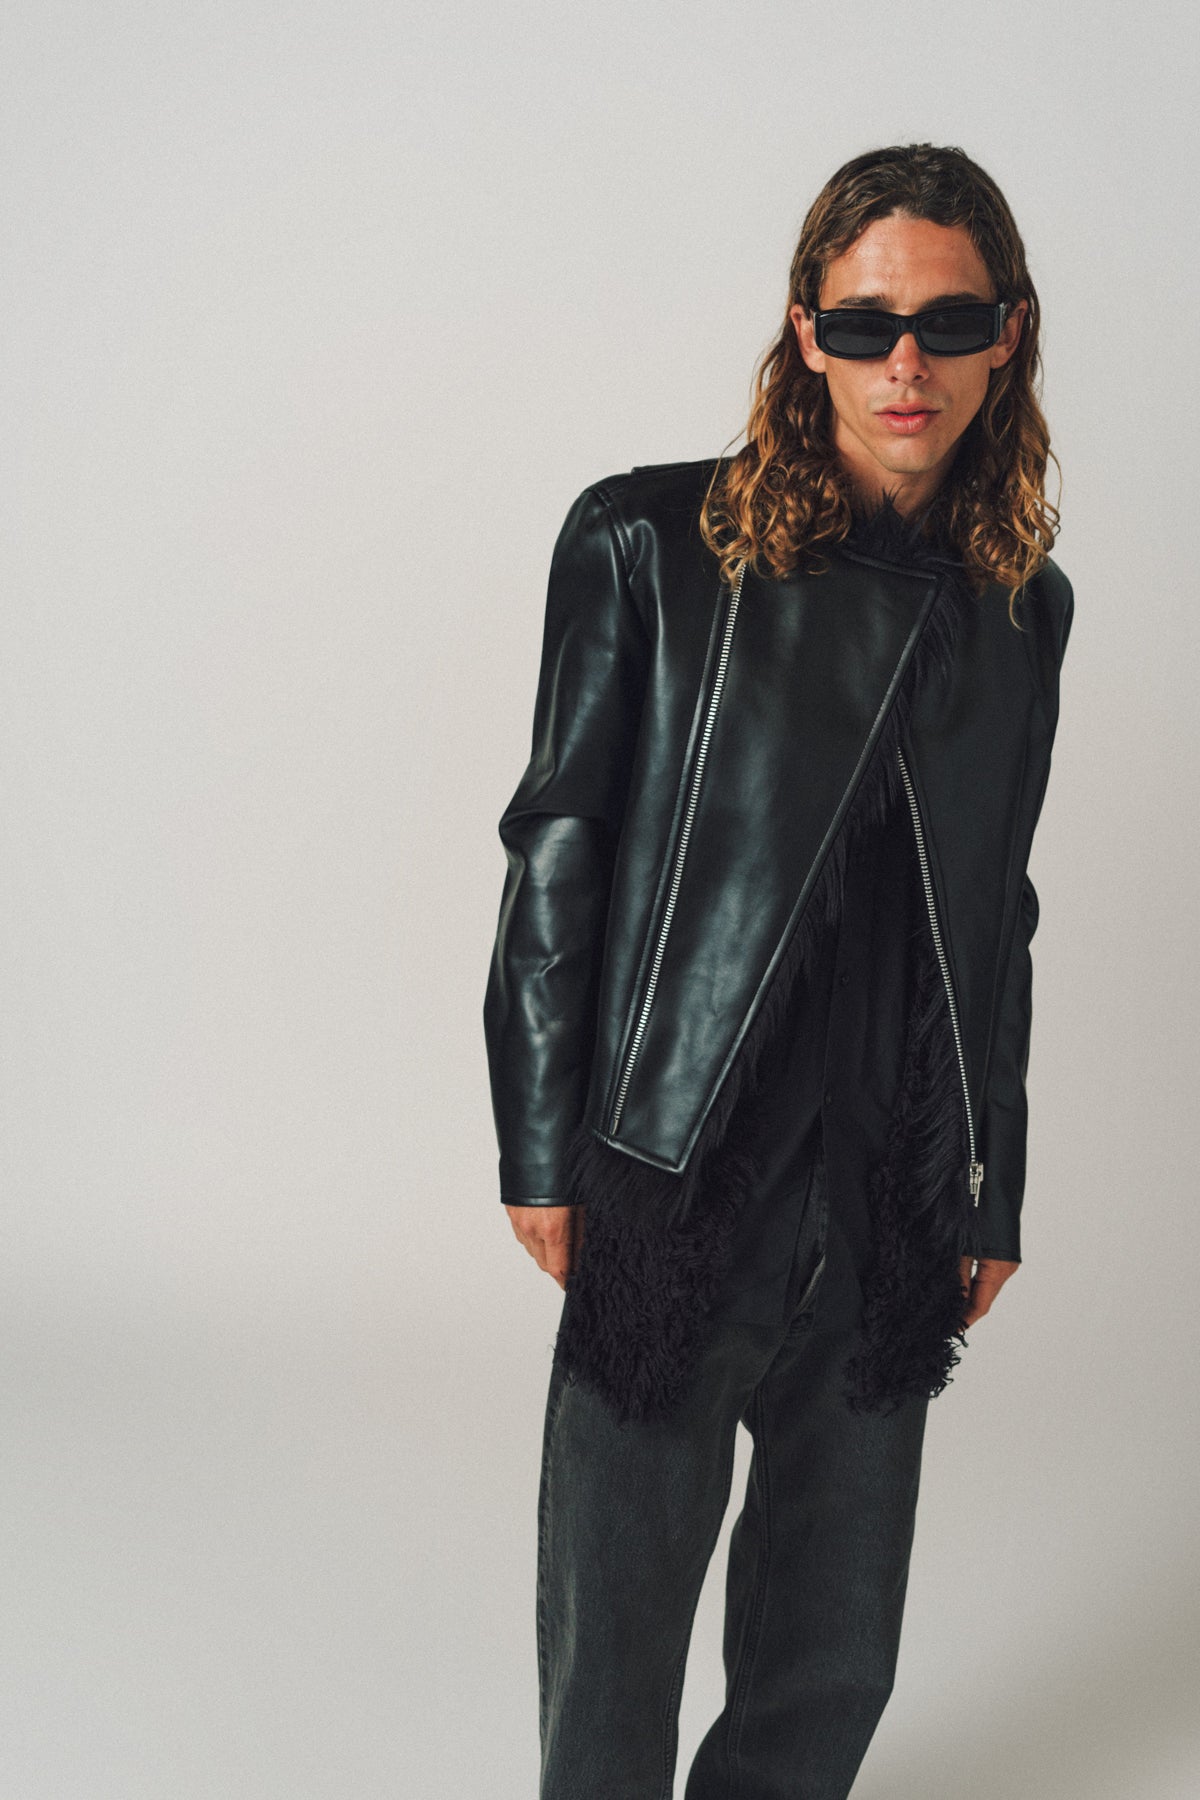 Zara Man Faux Leather Jacket Size Large Black Long Sleeve Coat | eBay